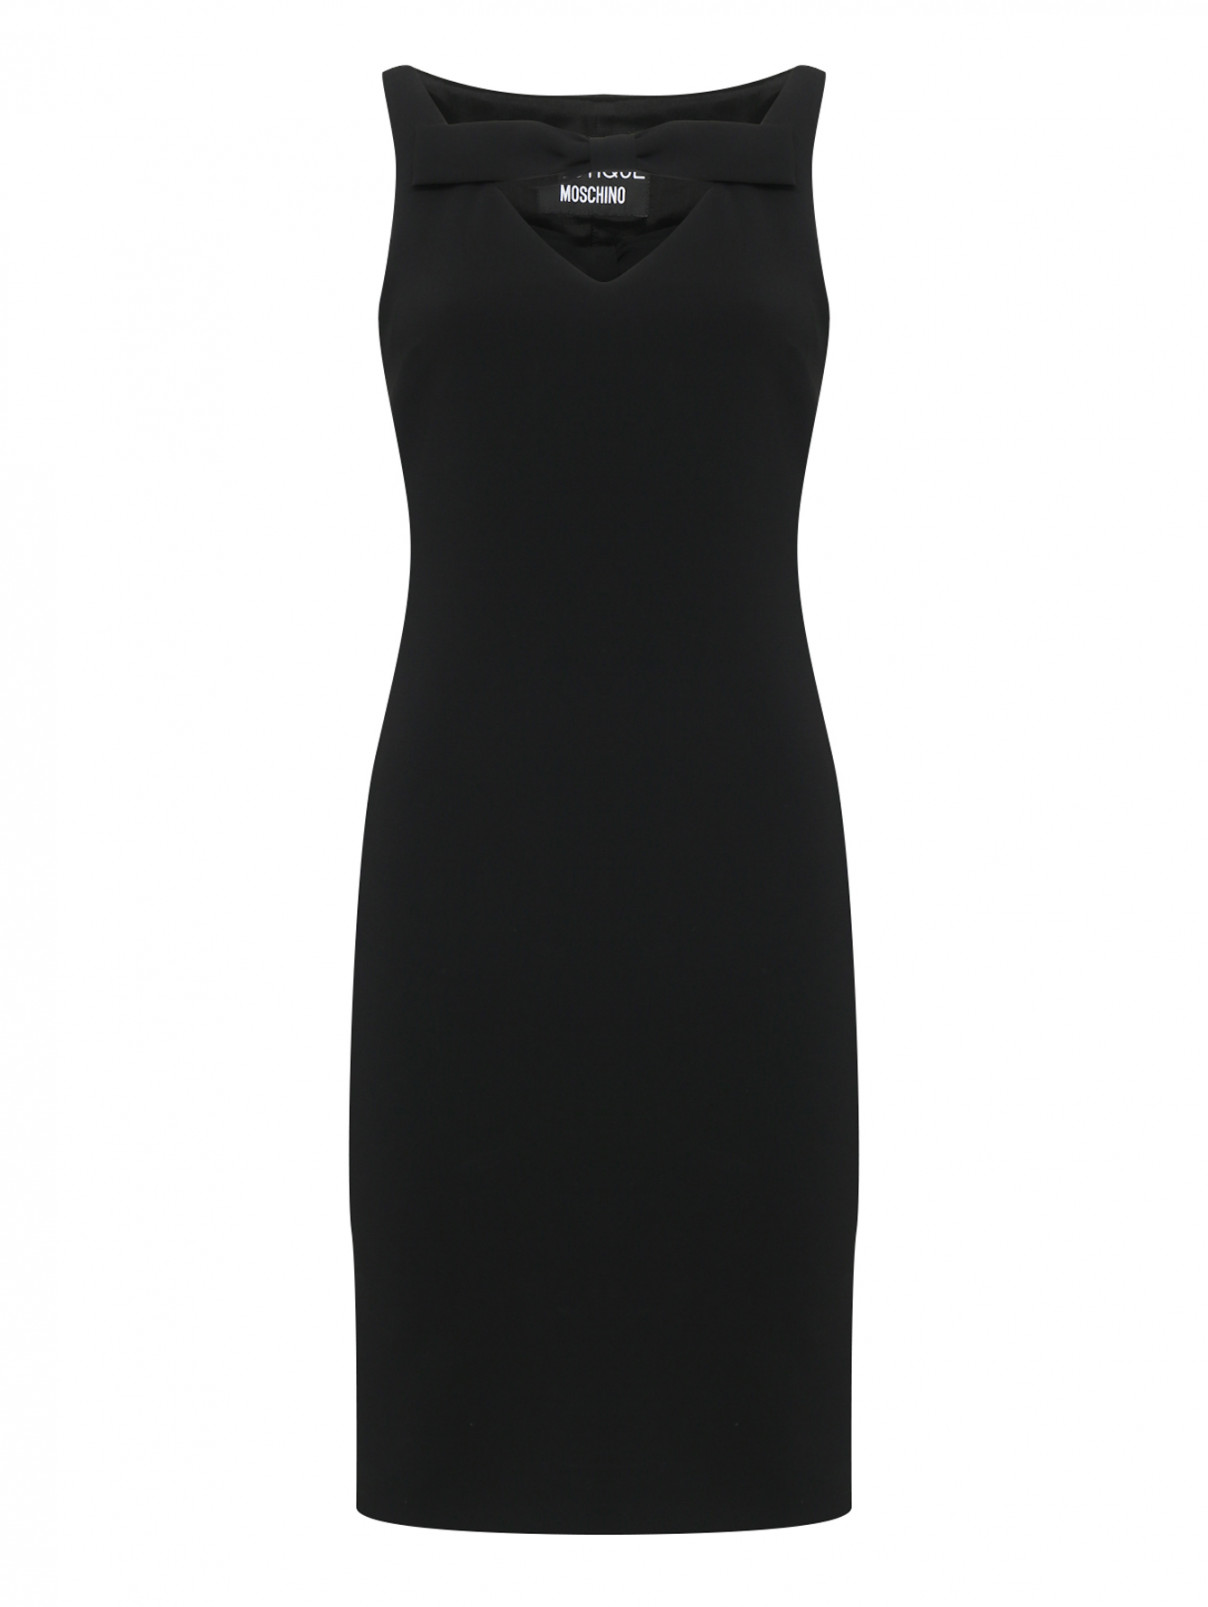 Платье-футляр с бантом BOUTIQUE MOSCHINO  –  Общий вид  – Цвет:  Черный